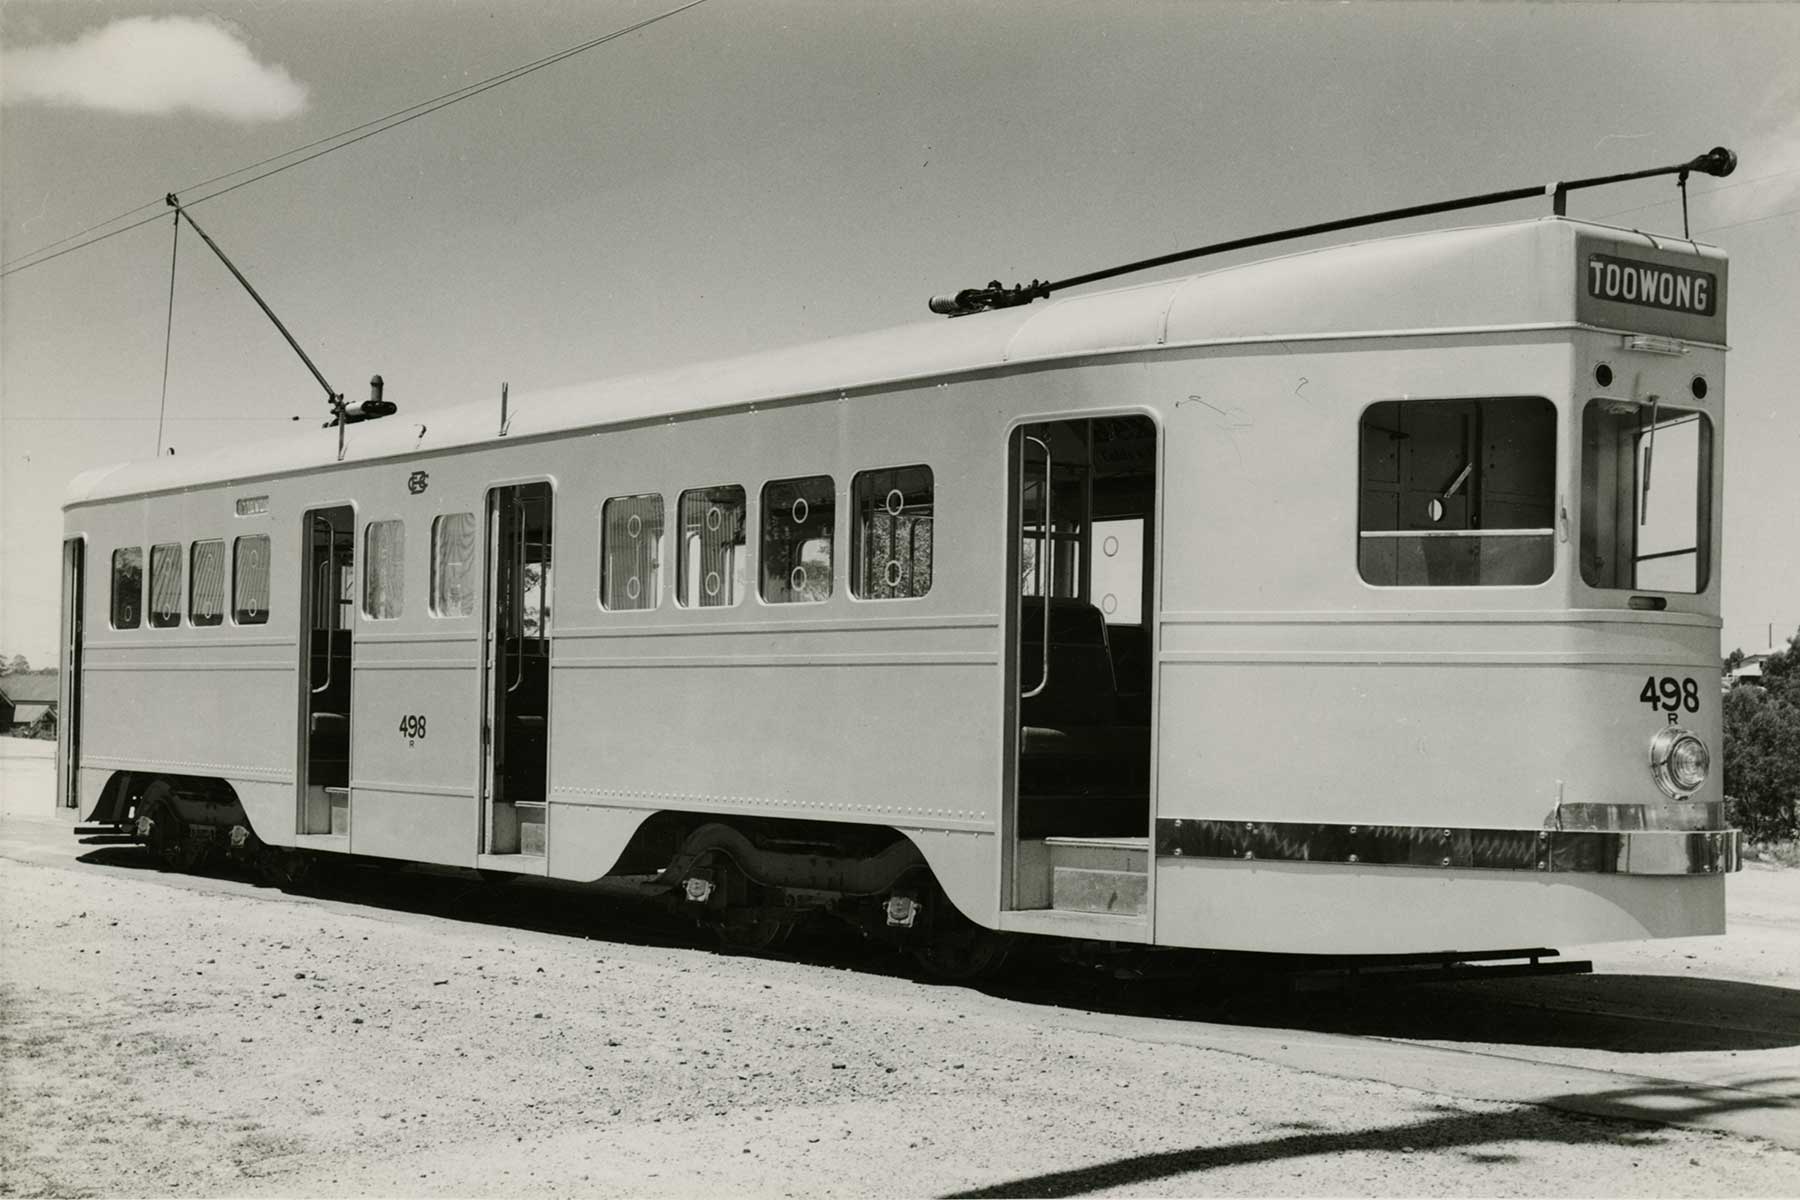 Toowong tram, Brisbane, c1950s